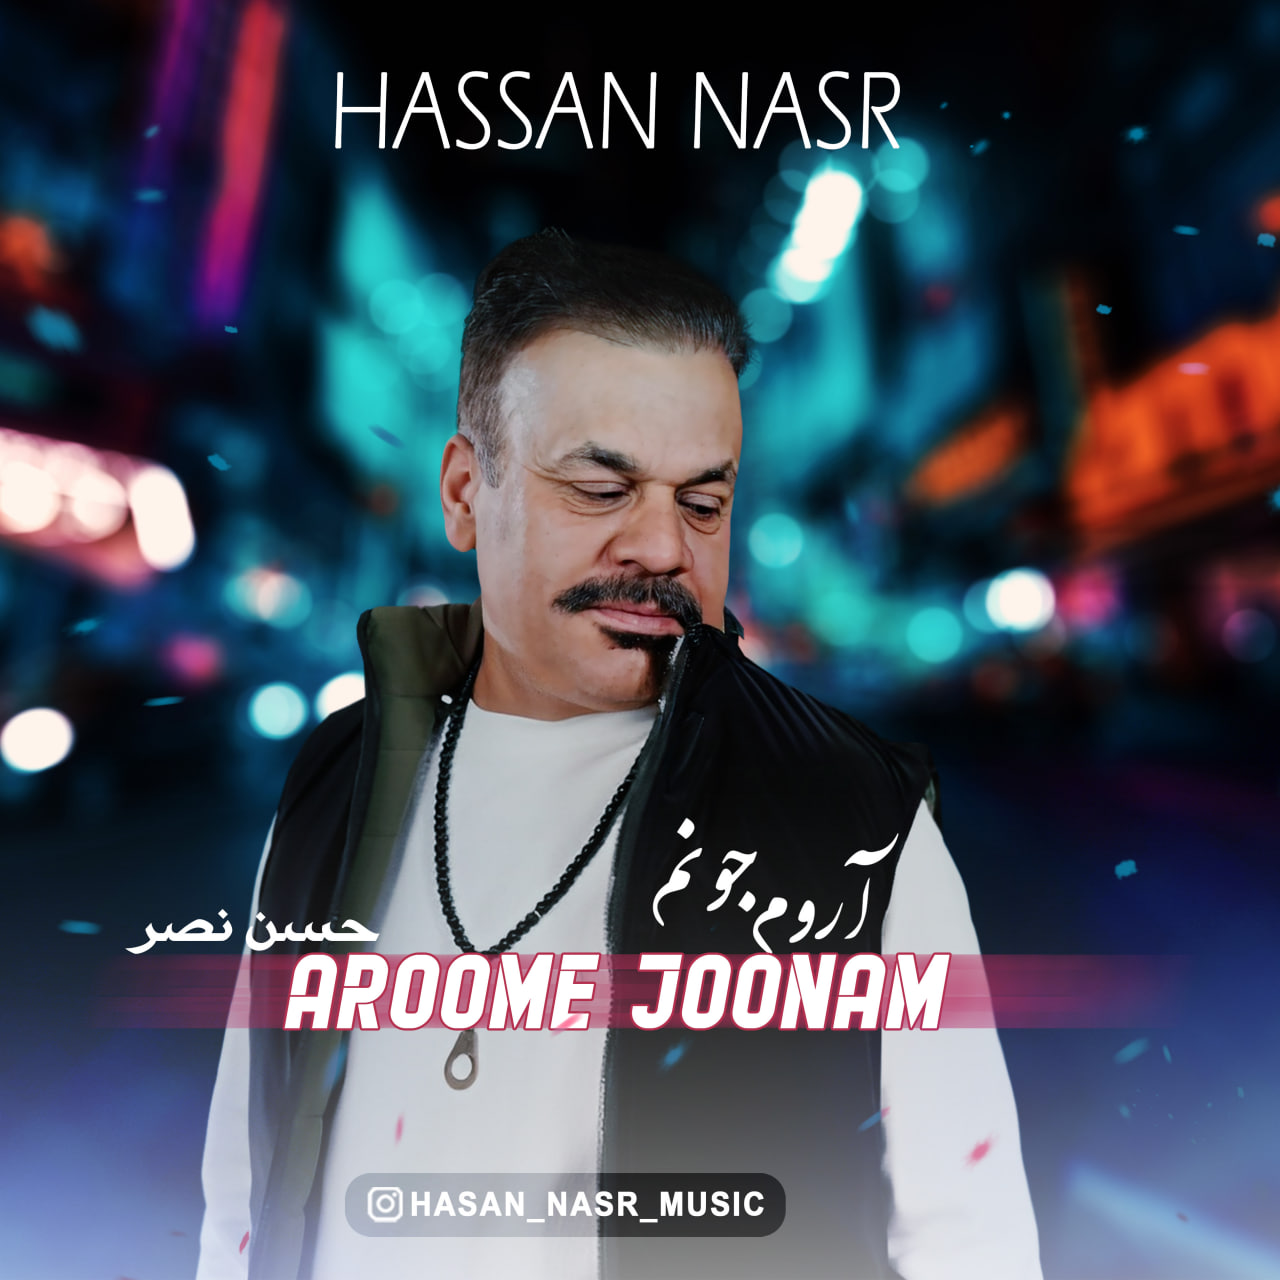 Hassan Nasr – Aroome Joonam